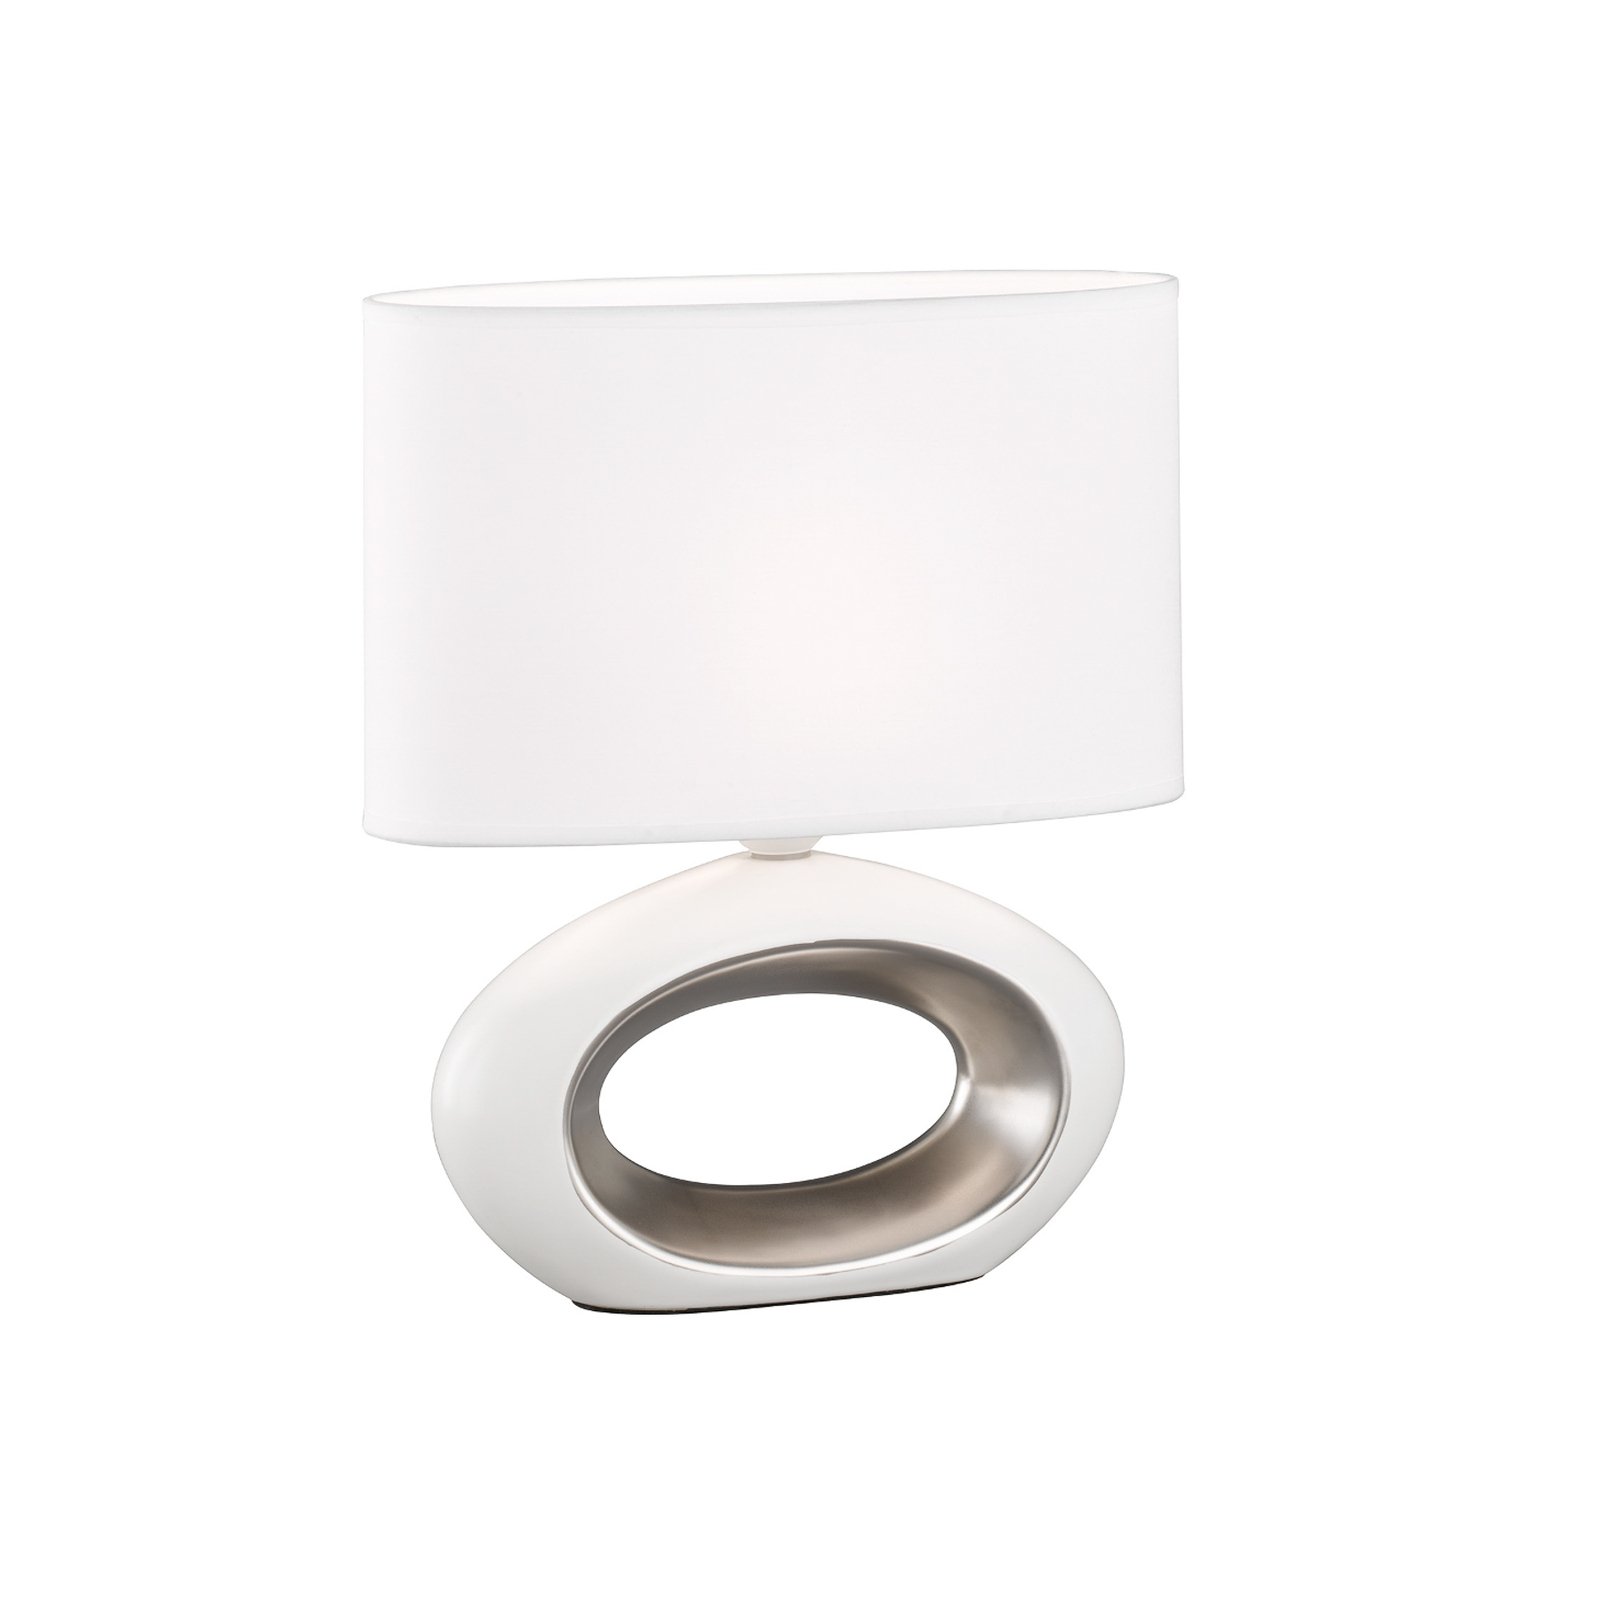 Lampe table Coba ovale tissu blanc détails chromés